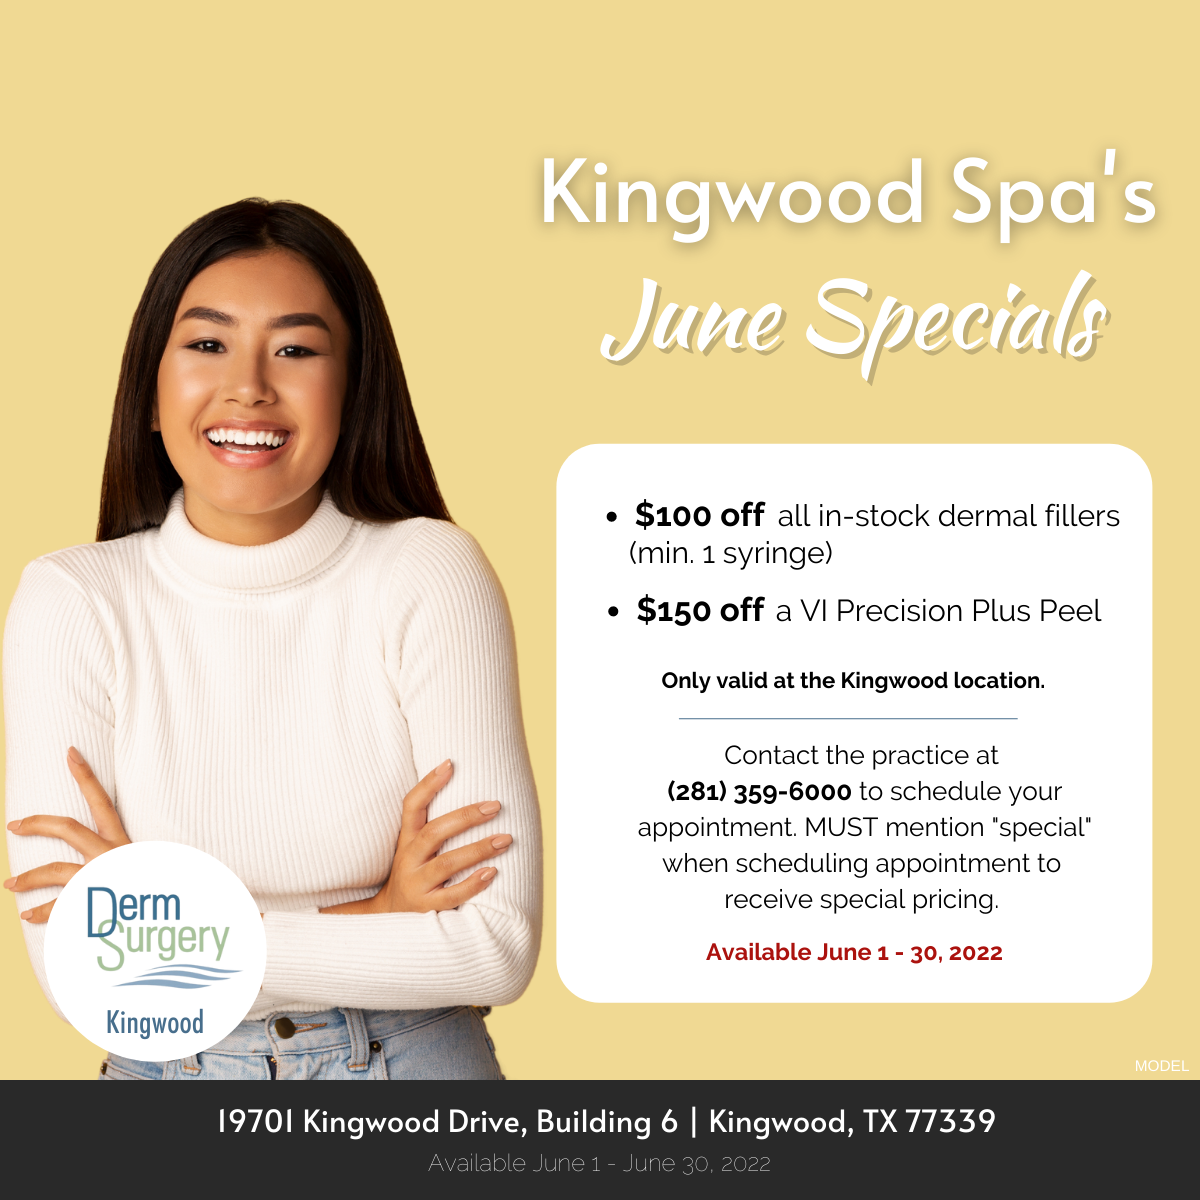 Kingwood Spa's June Specials 2022